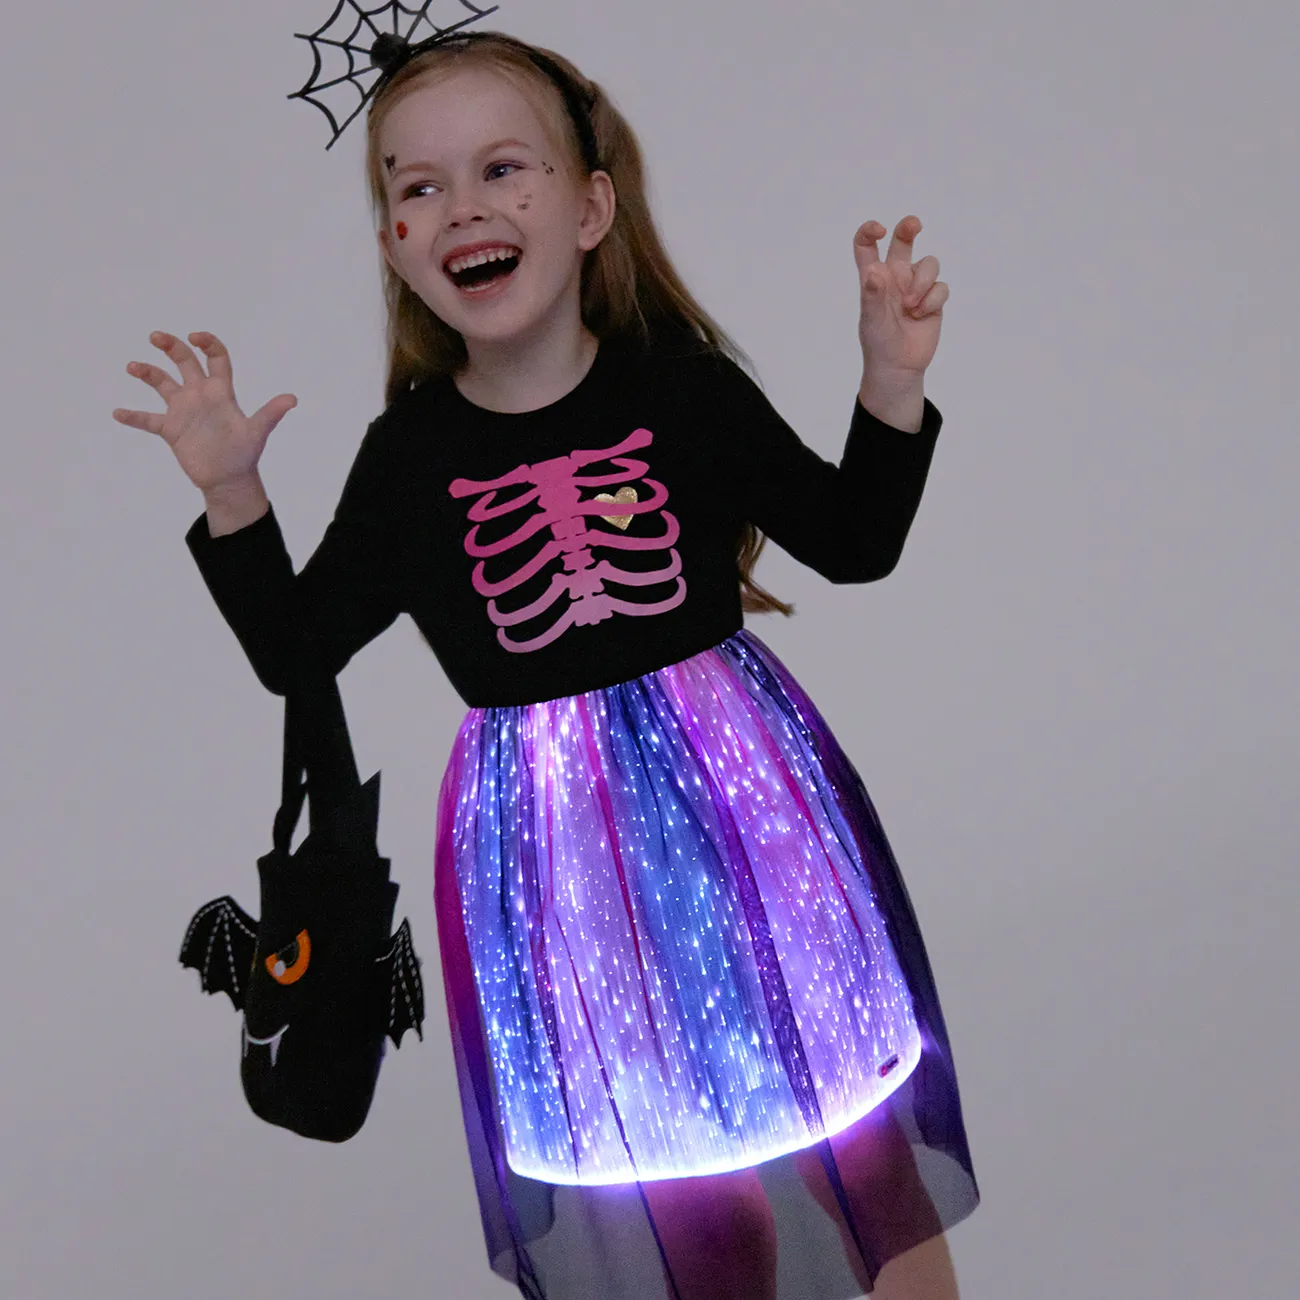 Go-Glow Illuminating Kid Dress avec Light Up Stripes Color Clash Jupe, y compris le contrôleur (batterie intégrée) Noir big image 1